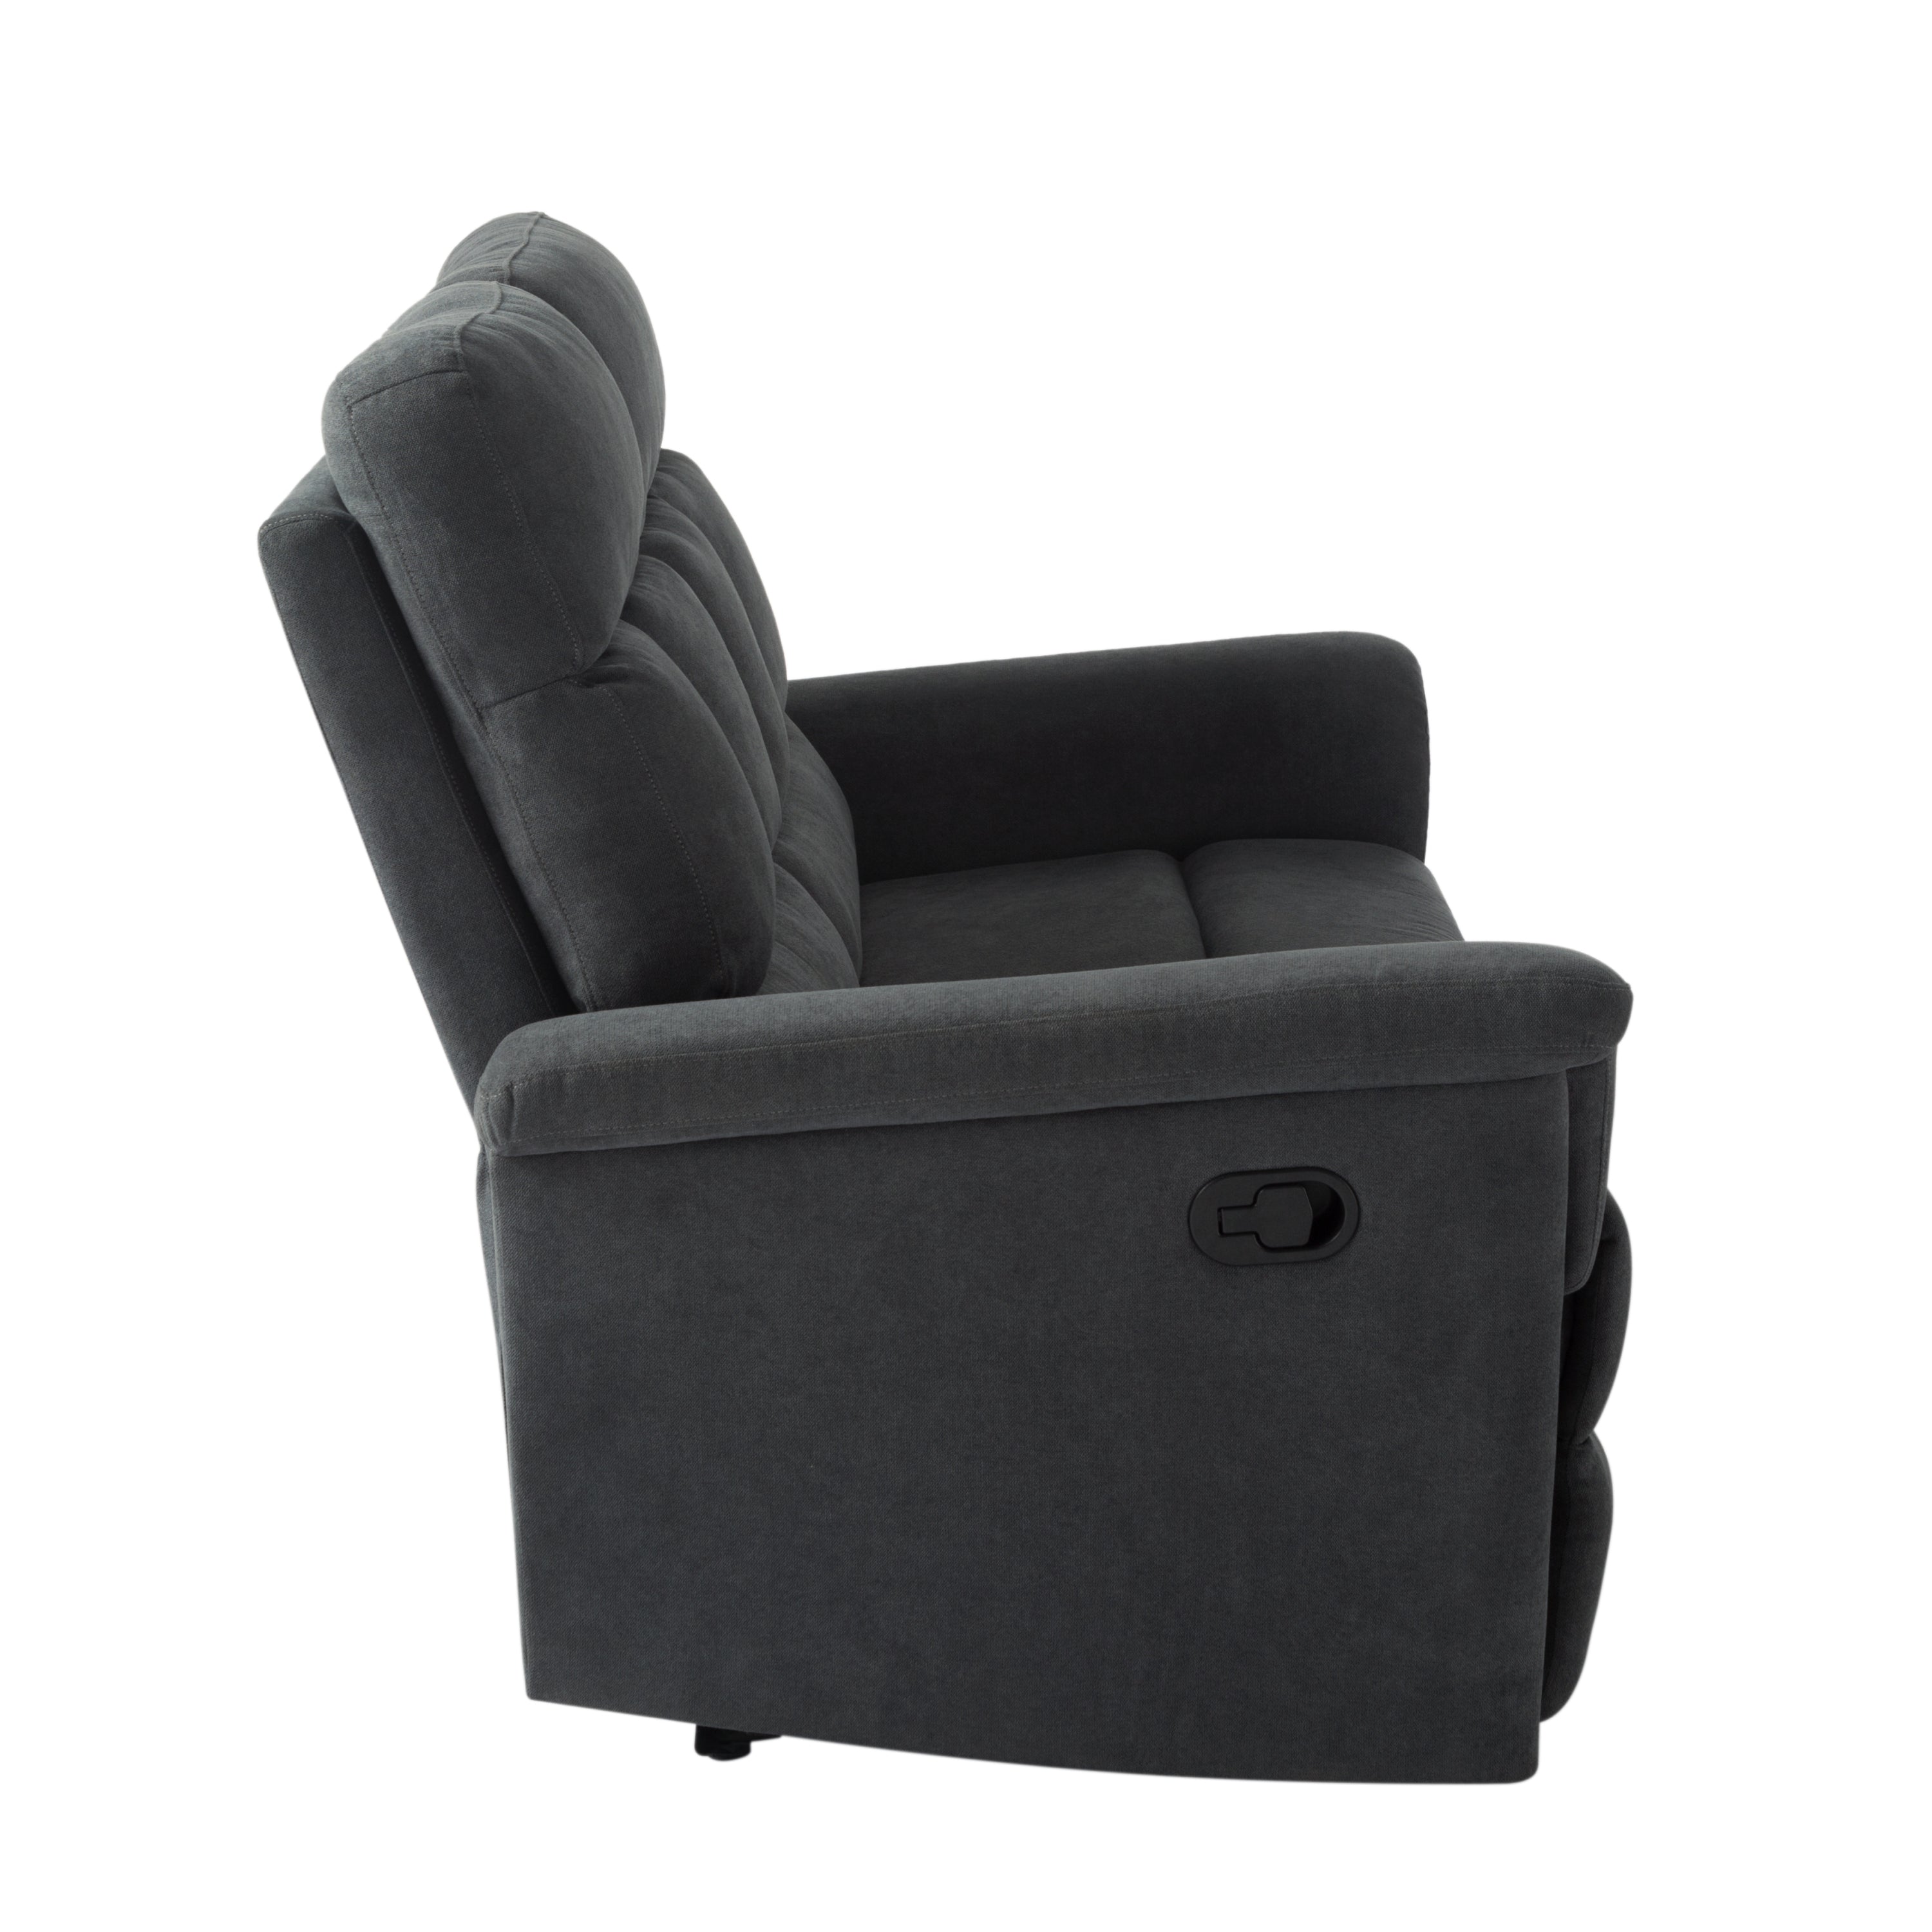 2 Seater Reclining Sofa (Gray)